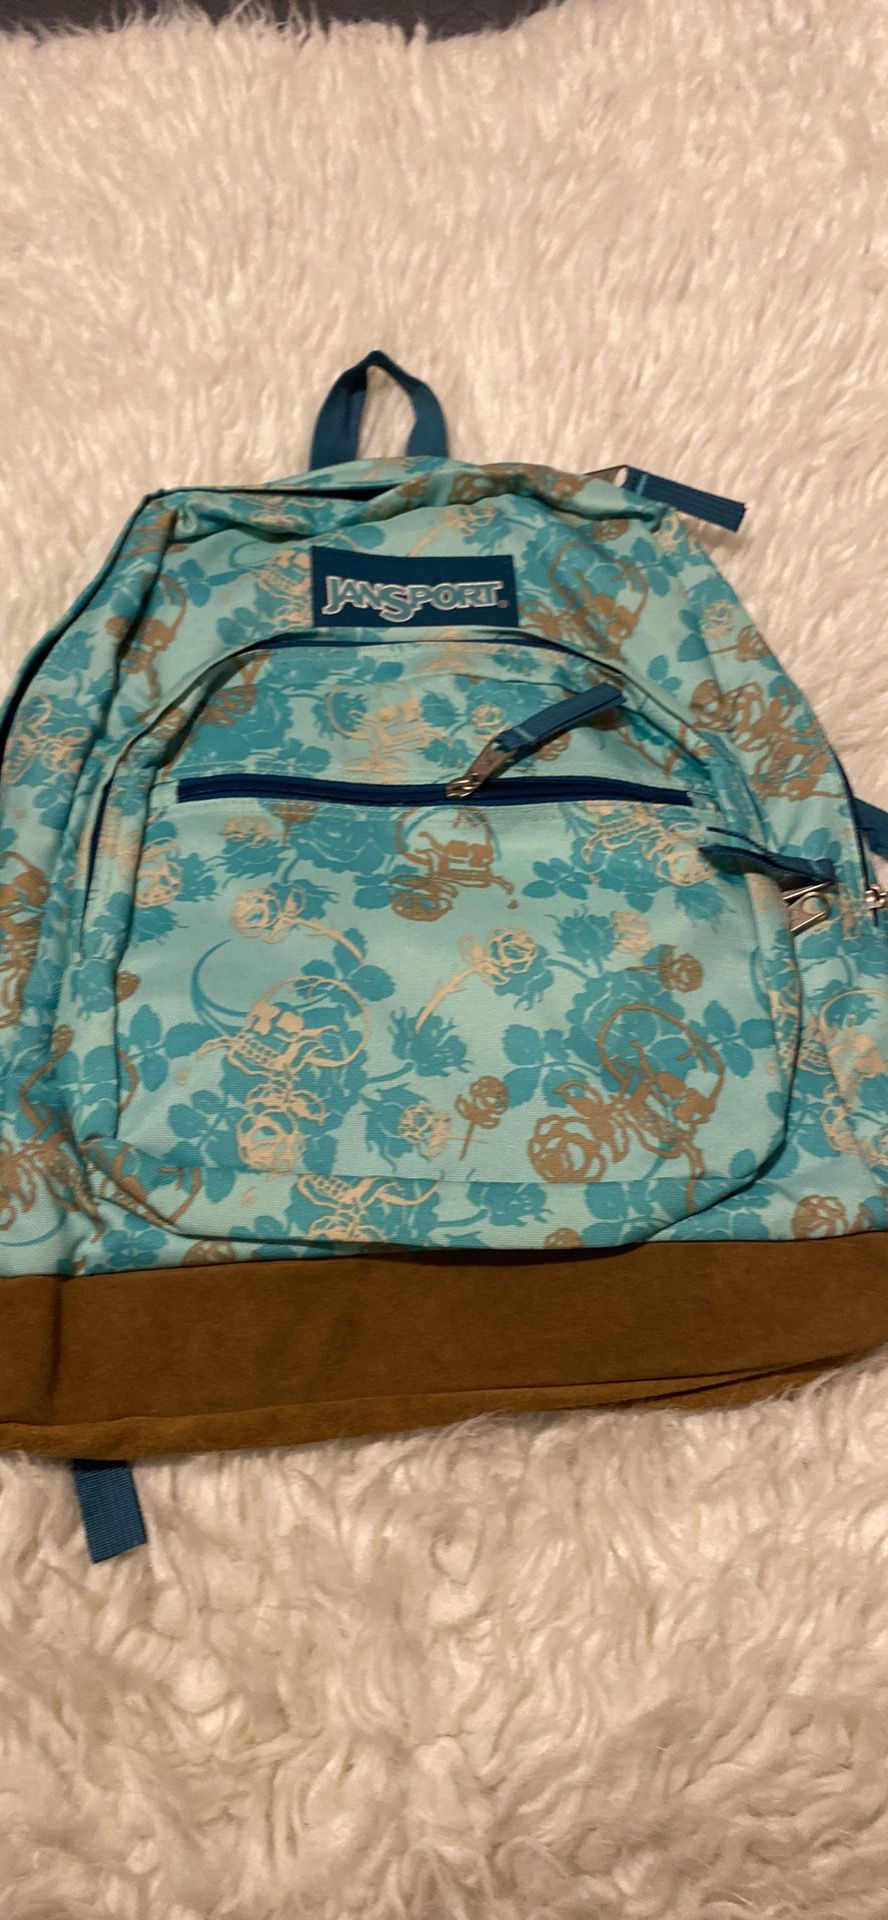 Jansport Flowered Backpack